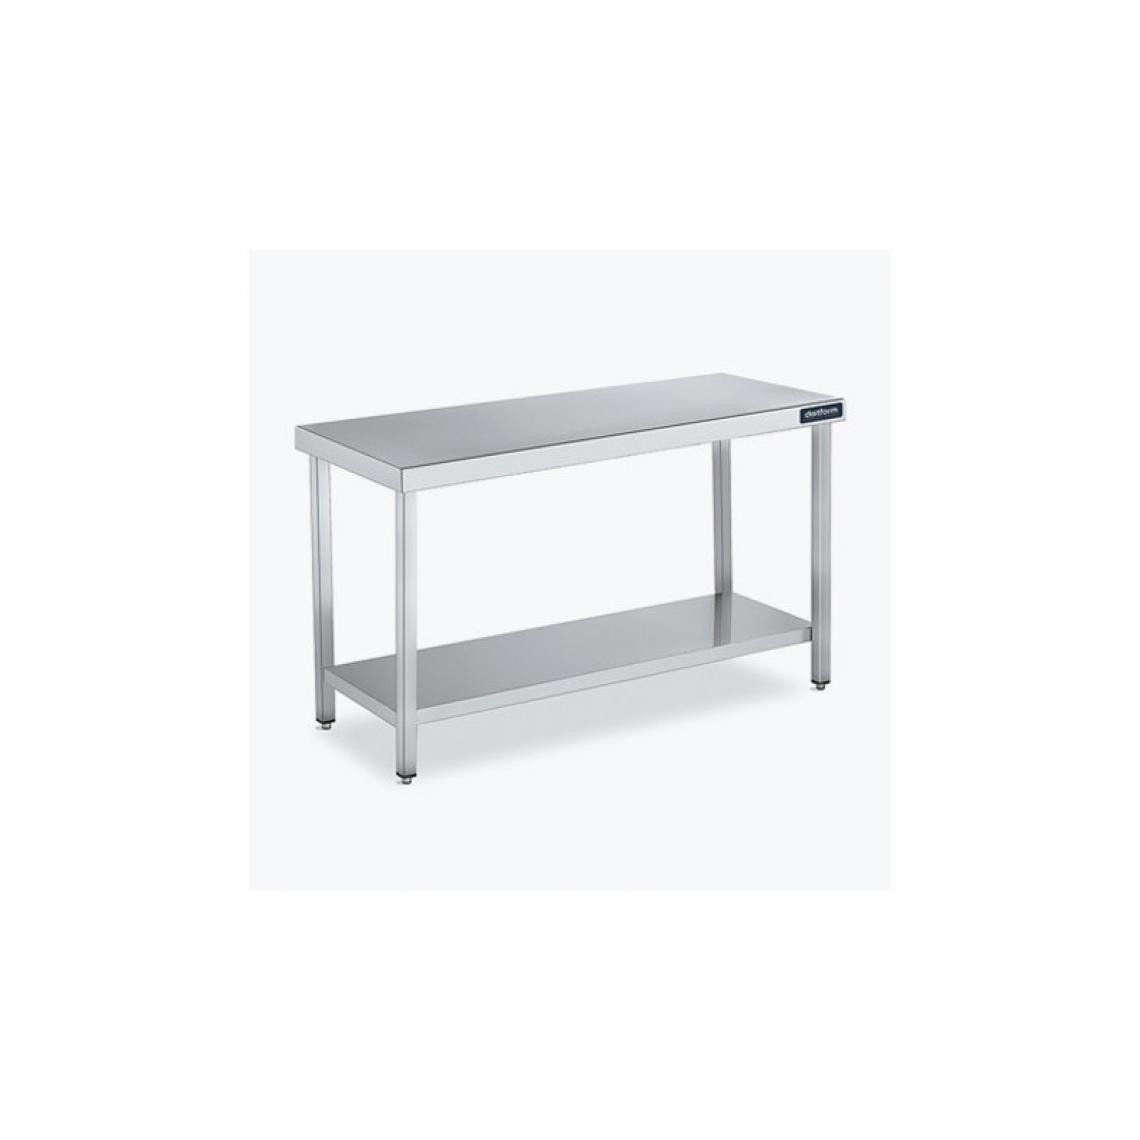 DISTFORM - Table Centrale 600x700 avec Étagère - Distform - Inox 18/101400x700x850mm - Tables à manger